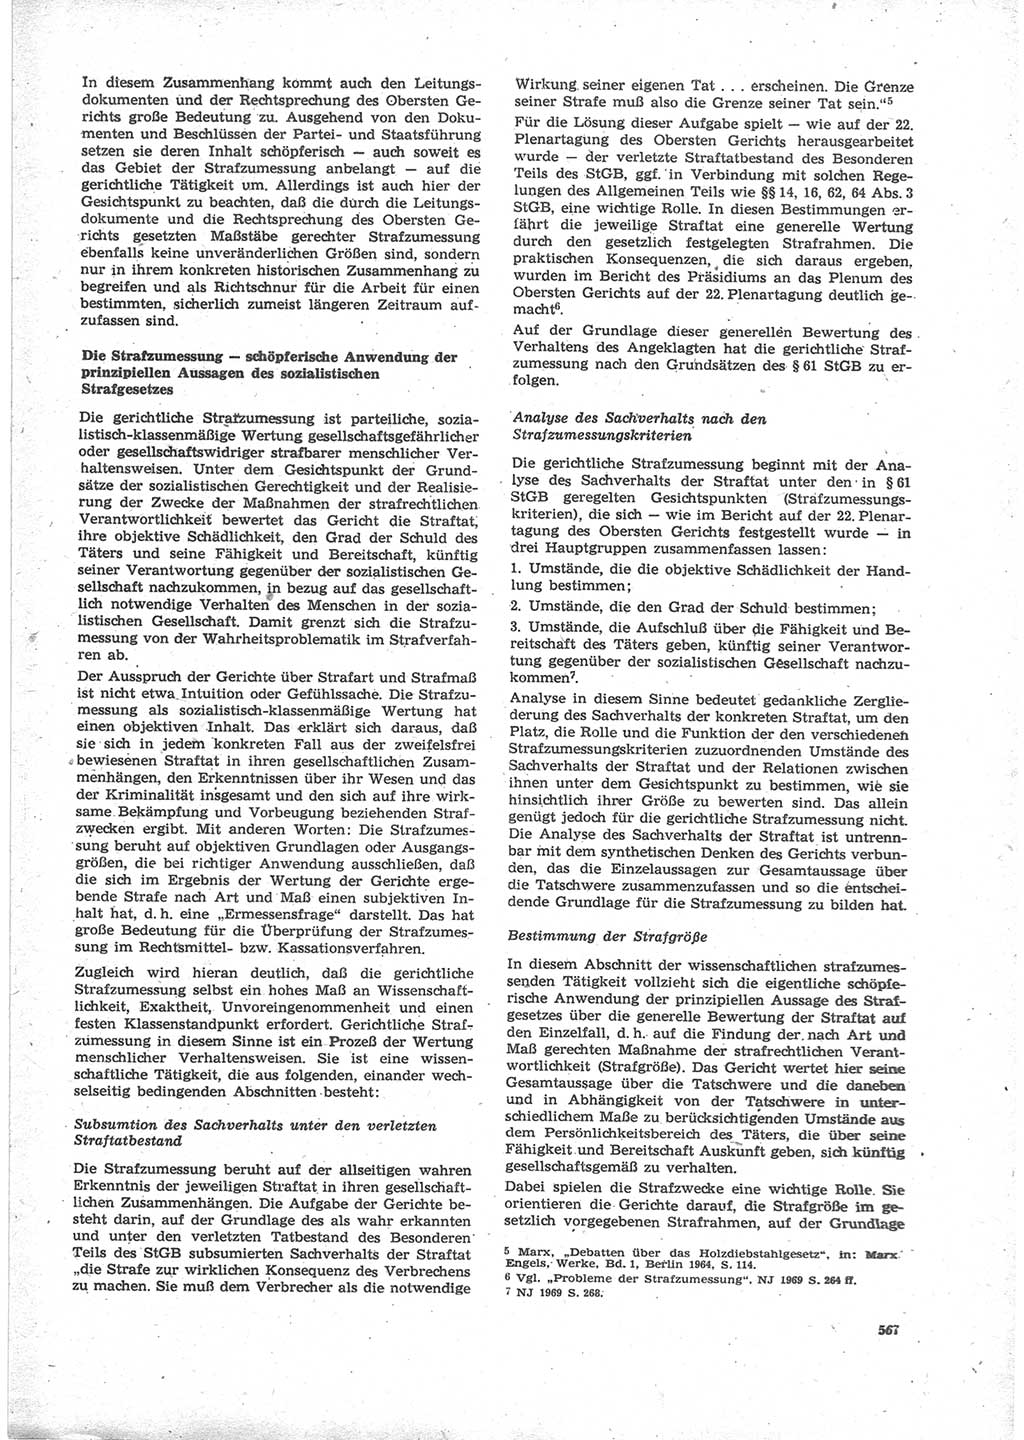 Neue Justiz (NJ), Zeitschrift für Recht und Rechtswissenschaft [Deutsche Demokratische Republik (DDR)], 24. Jahrgang 1970, Seite 567 (NJ DDR 1970, S. 567)